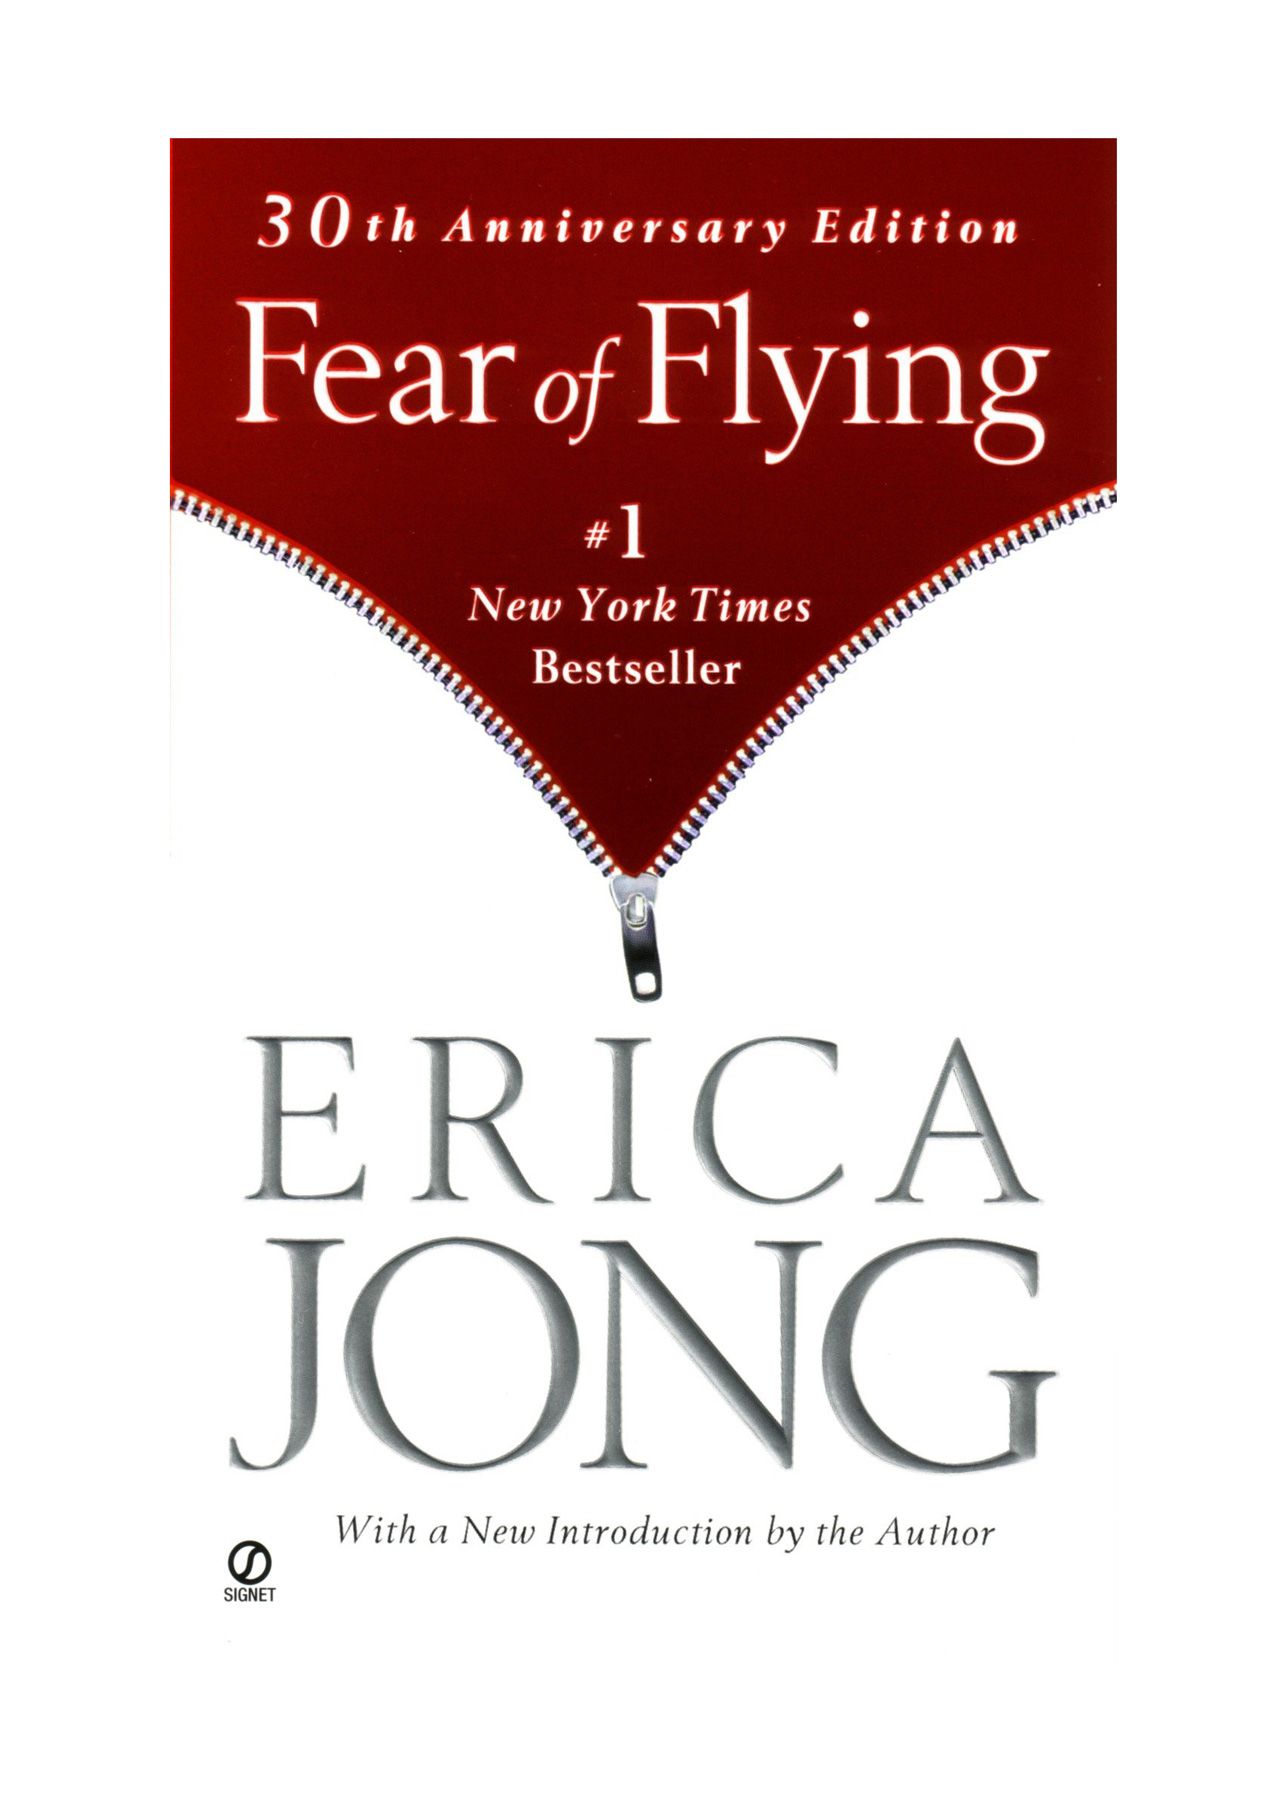 Head raamatud lugemiseks 20ndates eluaastates: Erica Jongi 'Lennuhirm'.